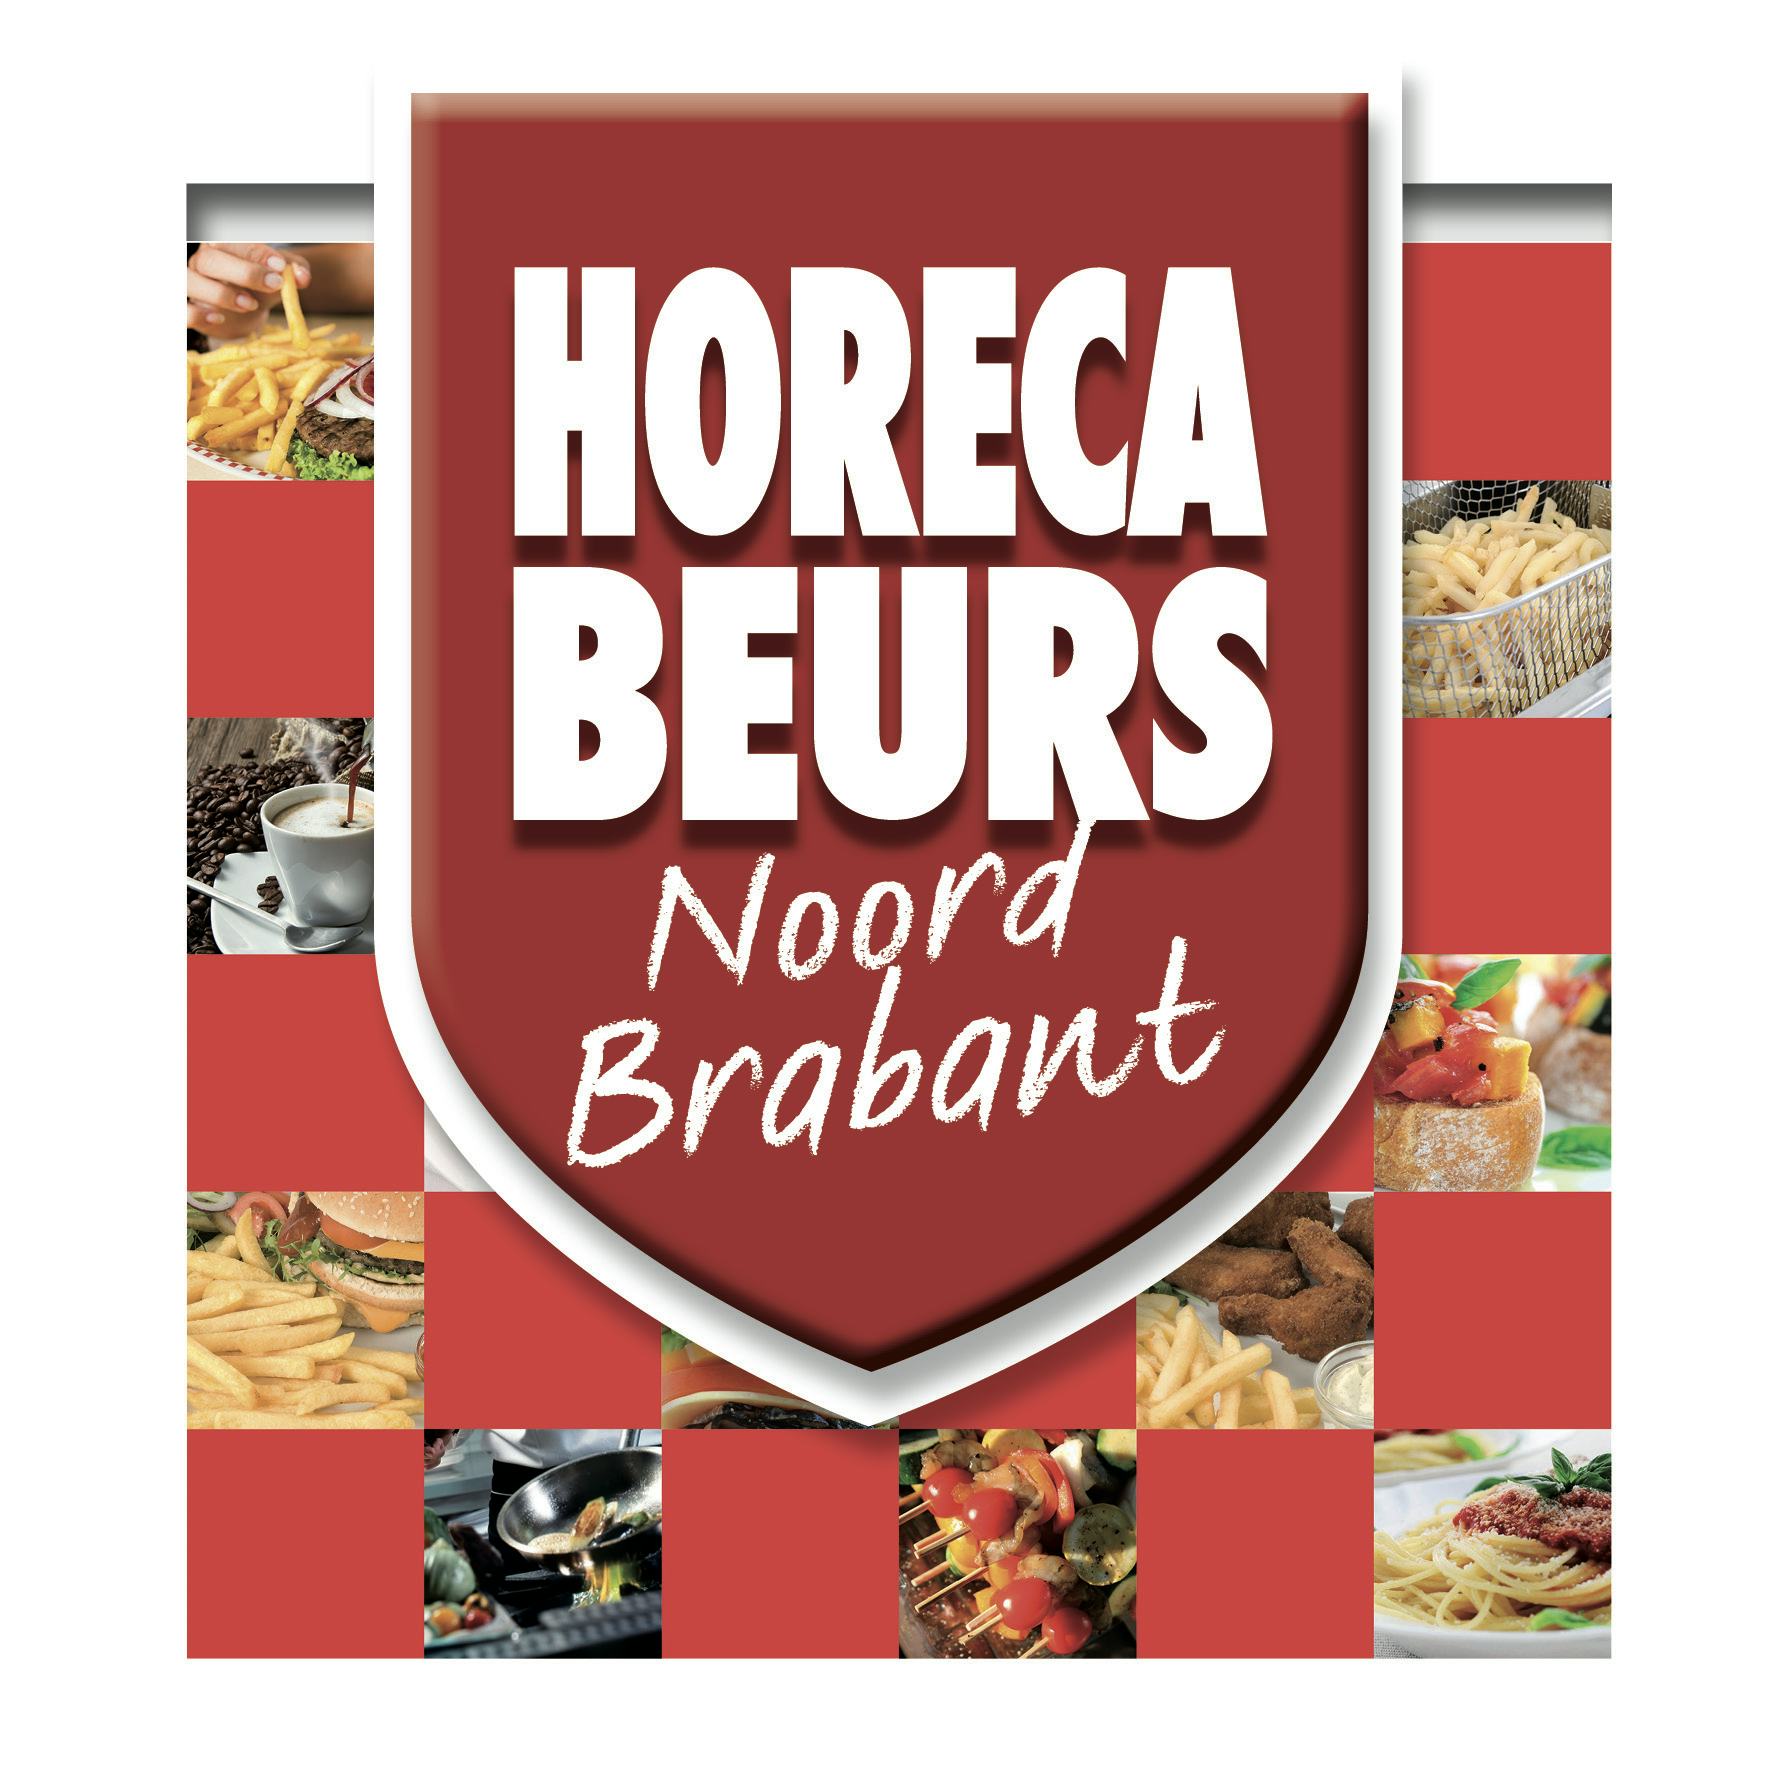 Ruim vijftig standhouders op Horeca Beurs Noord Brabant